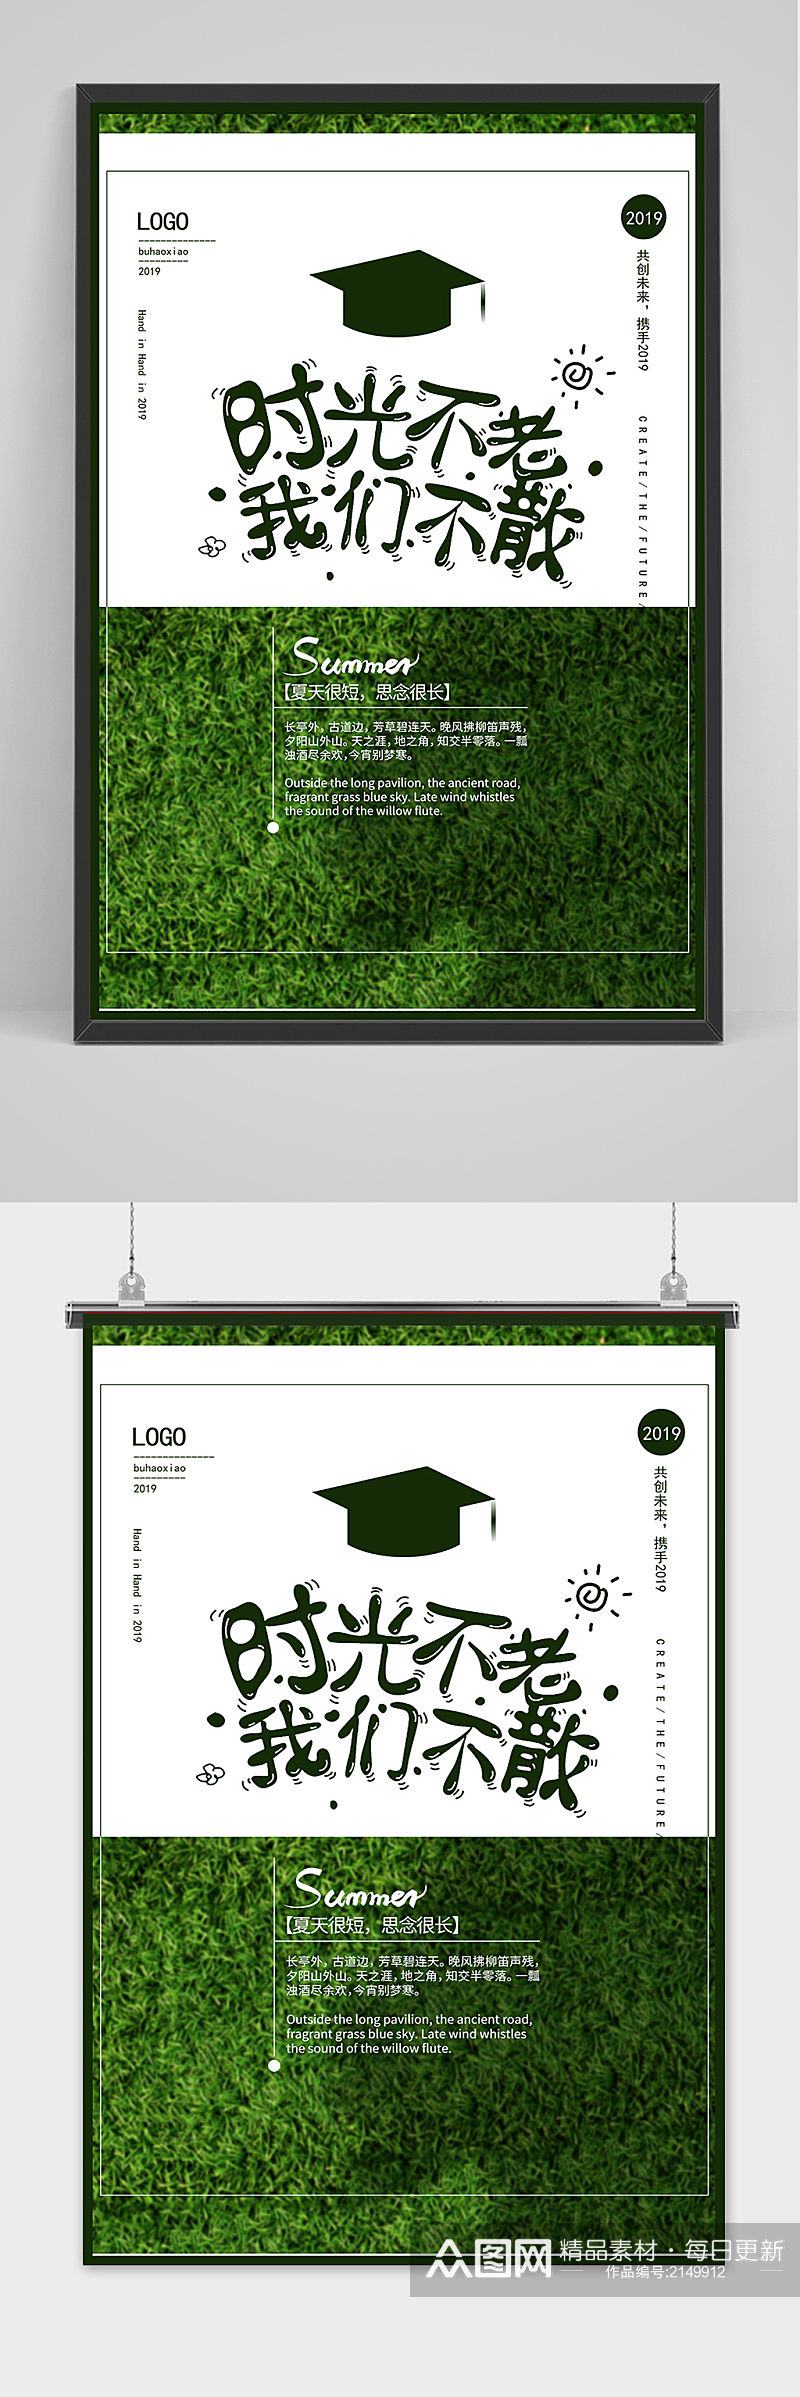 绿色创意清新毕业季校园海报素材